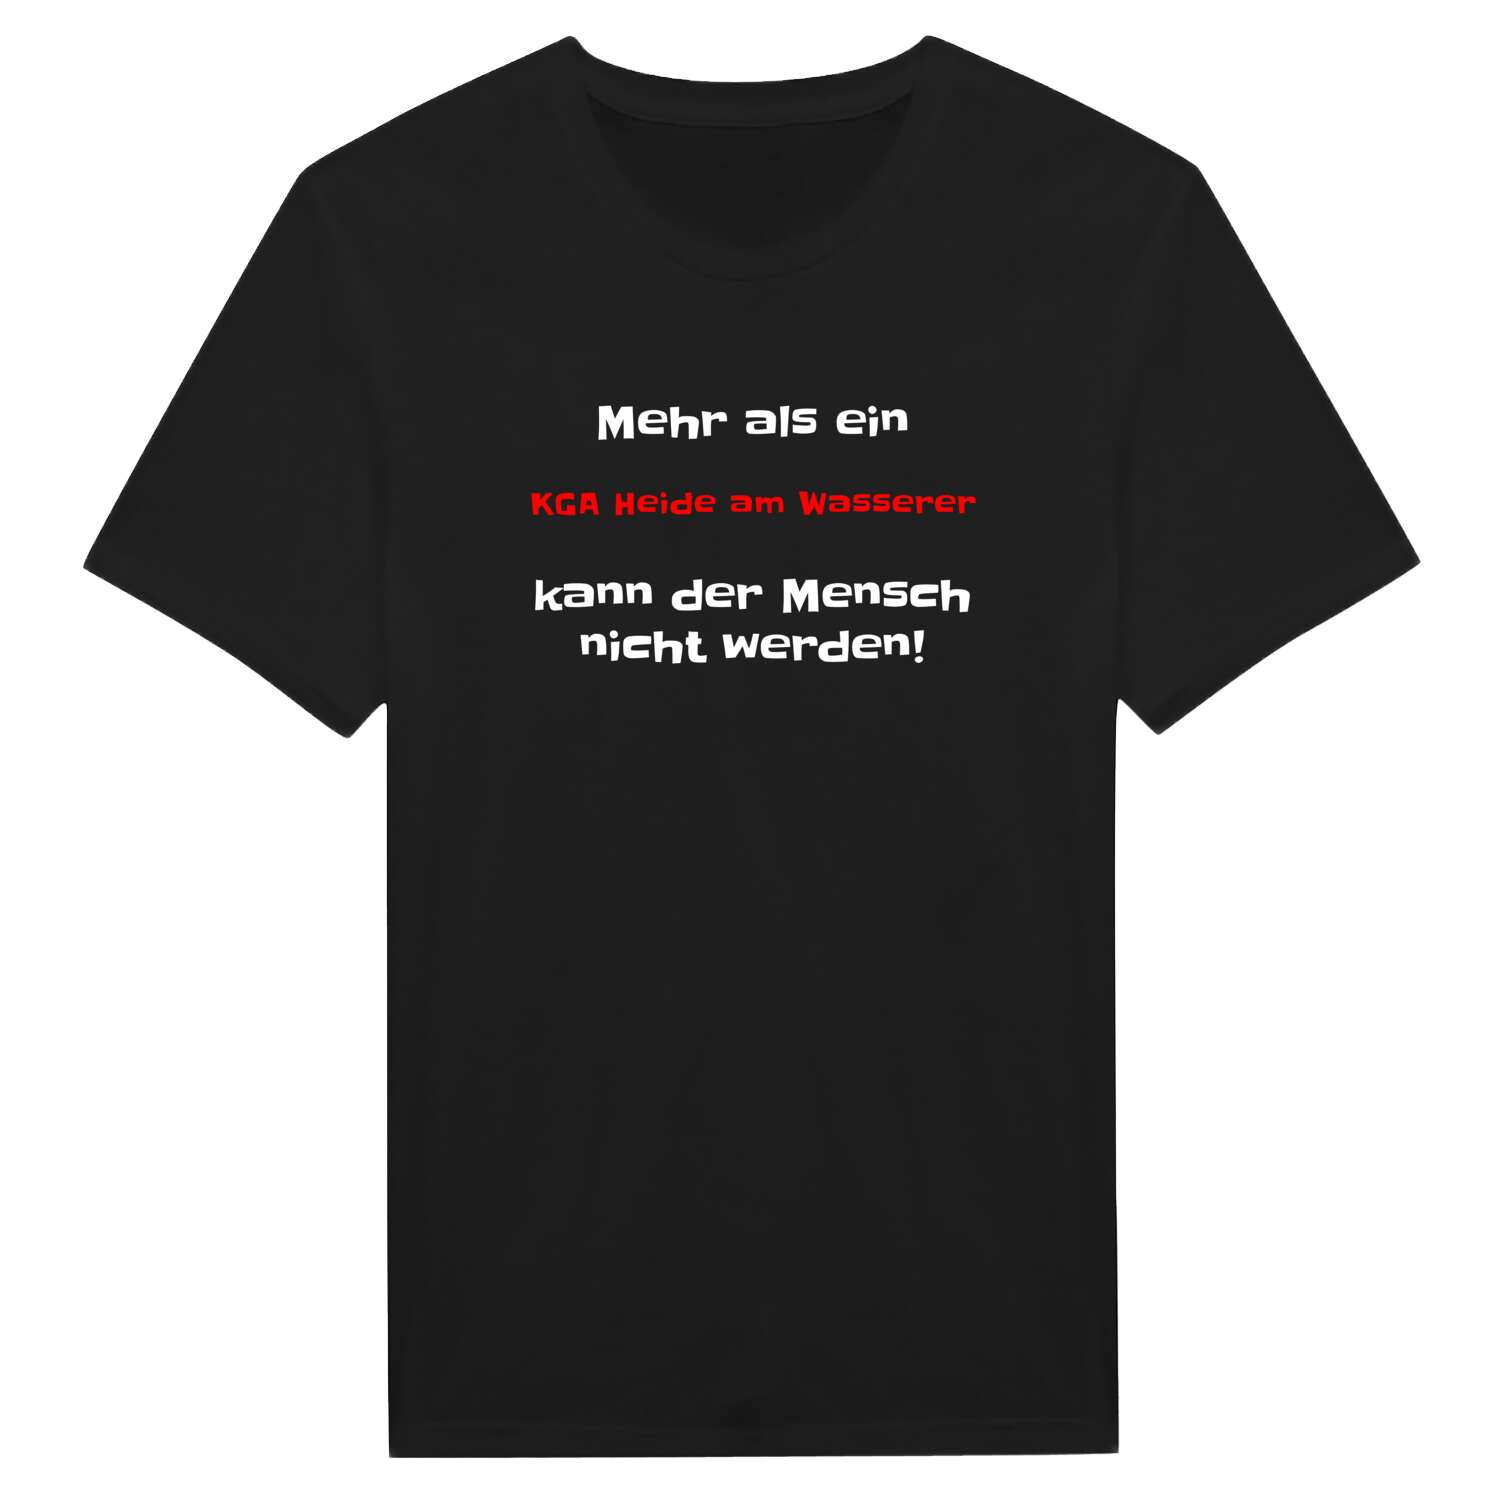 KGA Heide am Wasser T-Shirt »Mehr als ein«